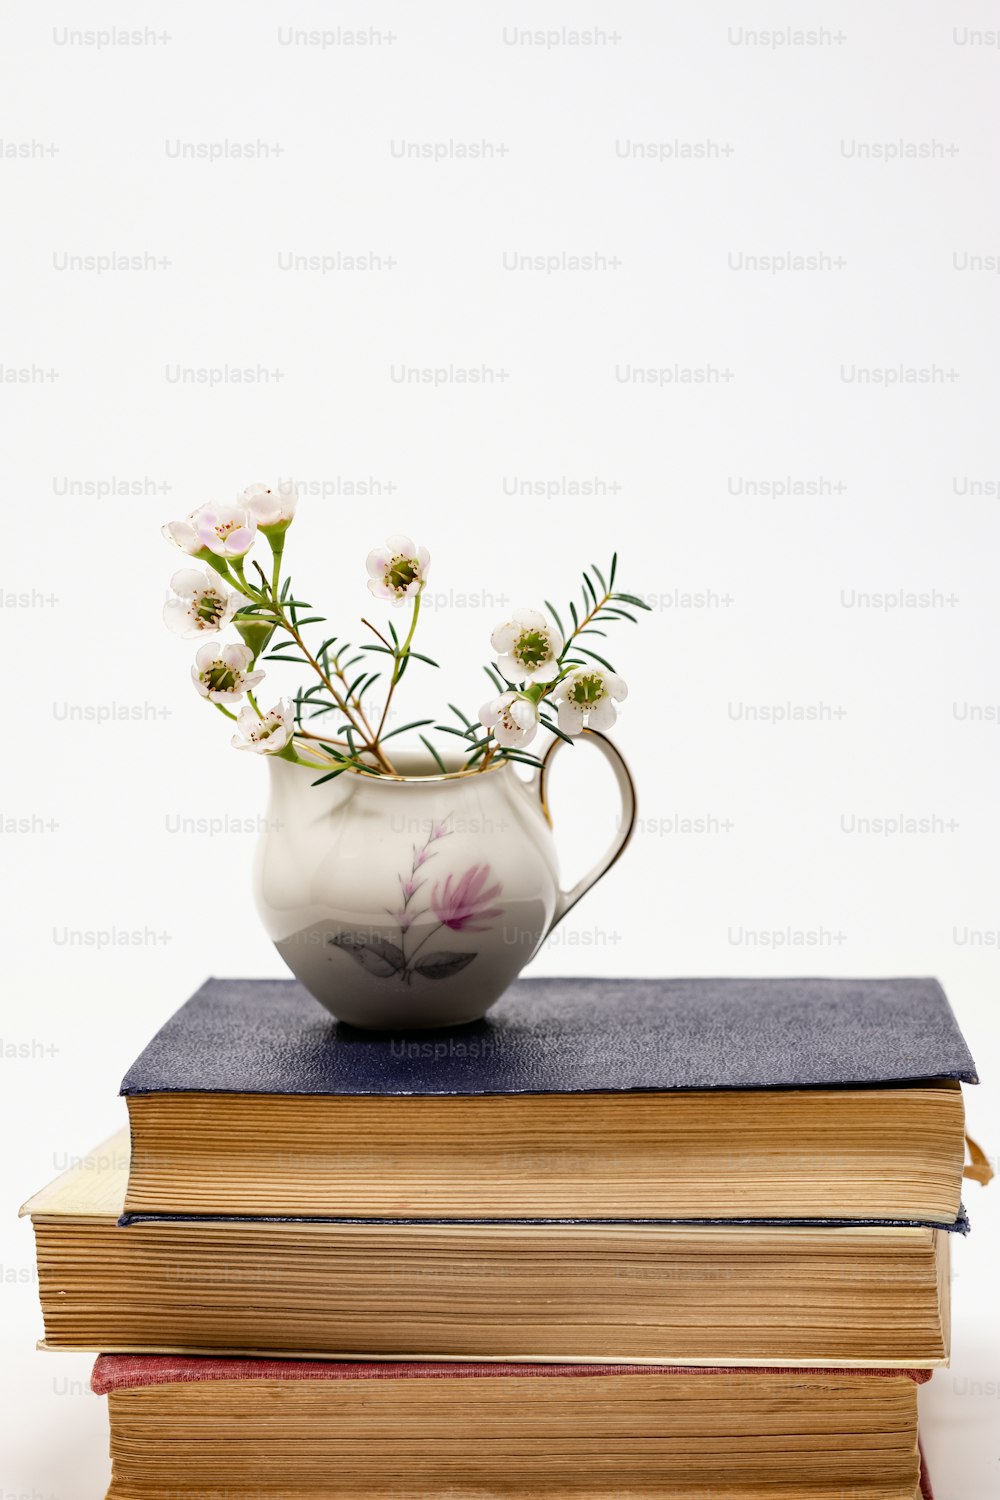 책 더미 위에 앉아 있는 꽃병